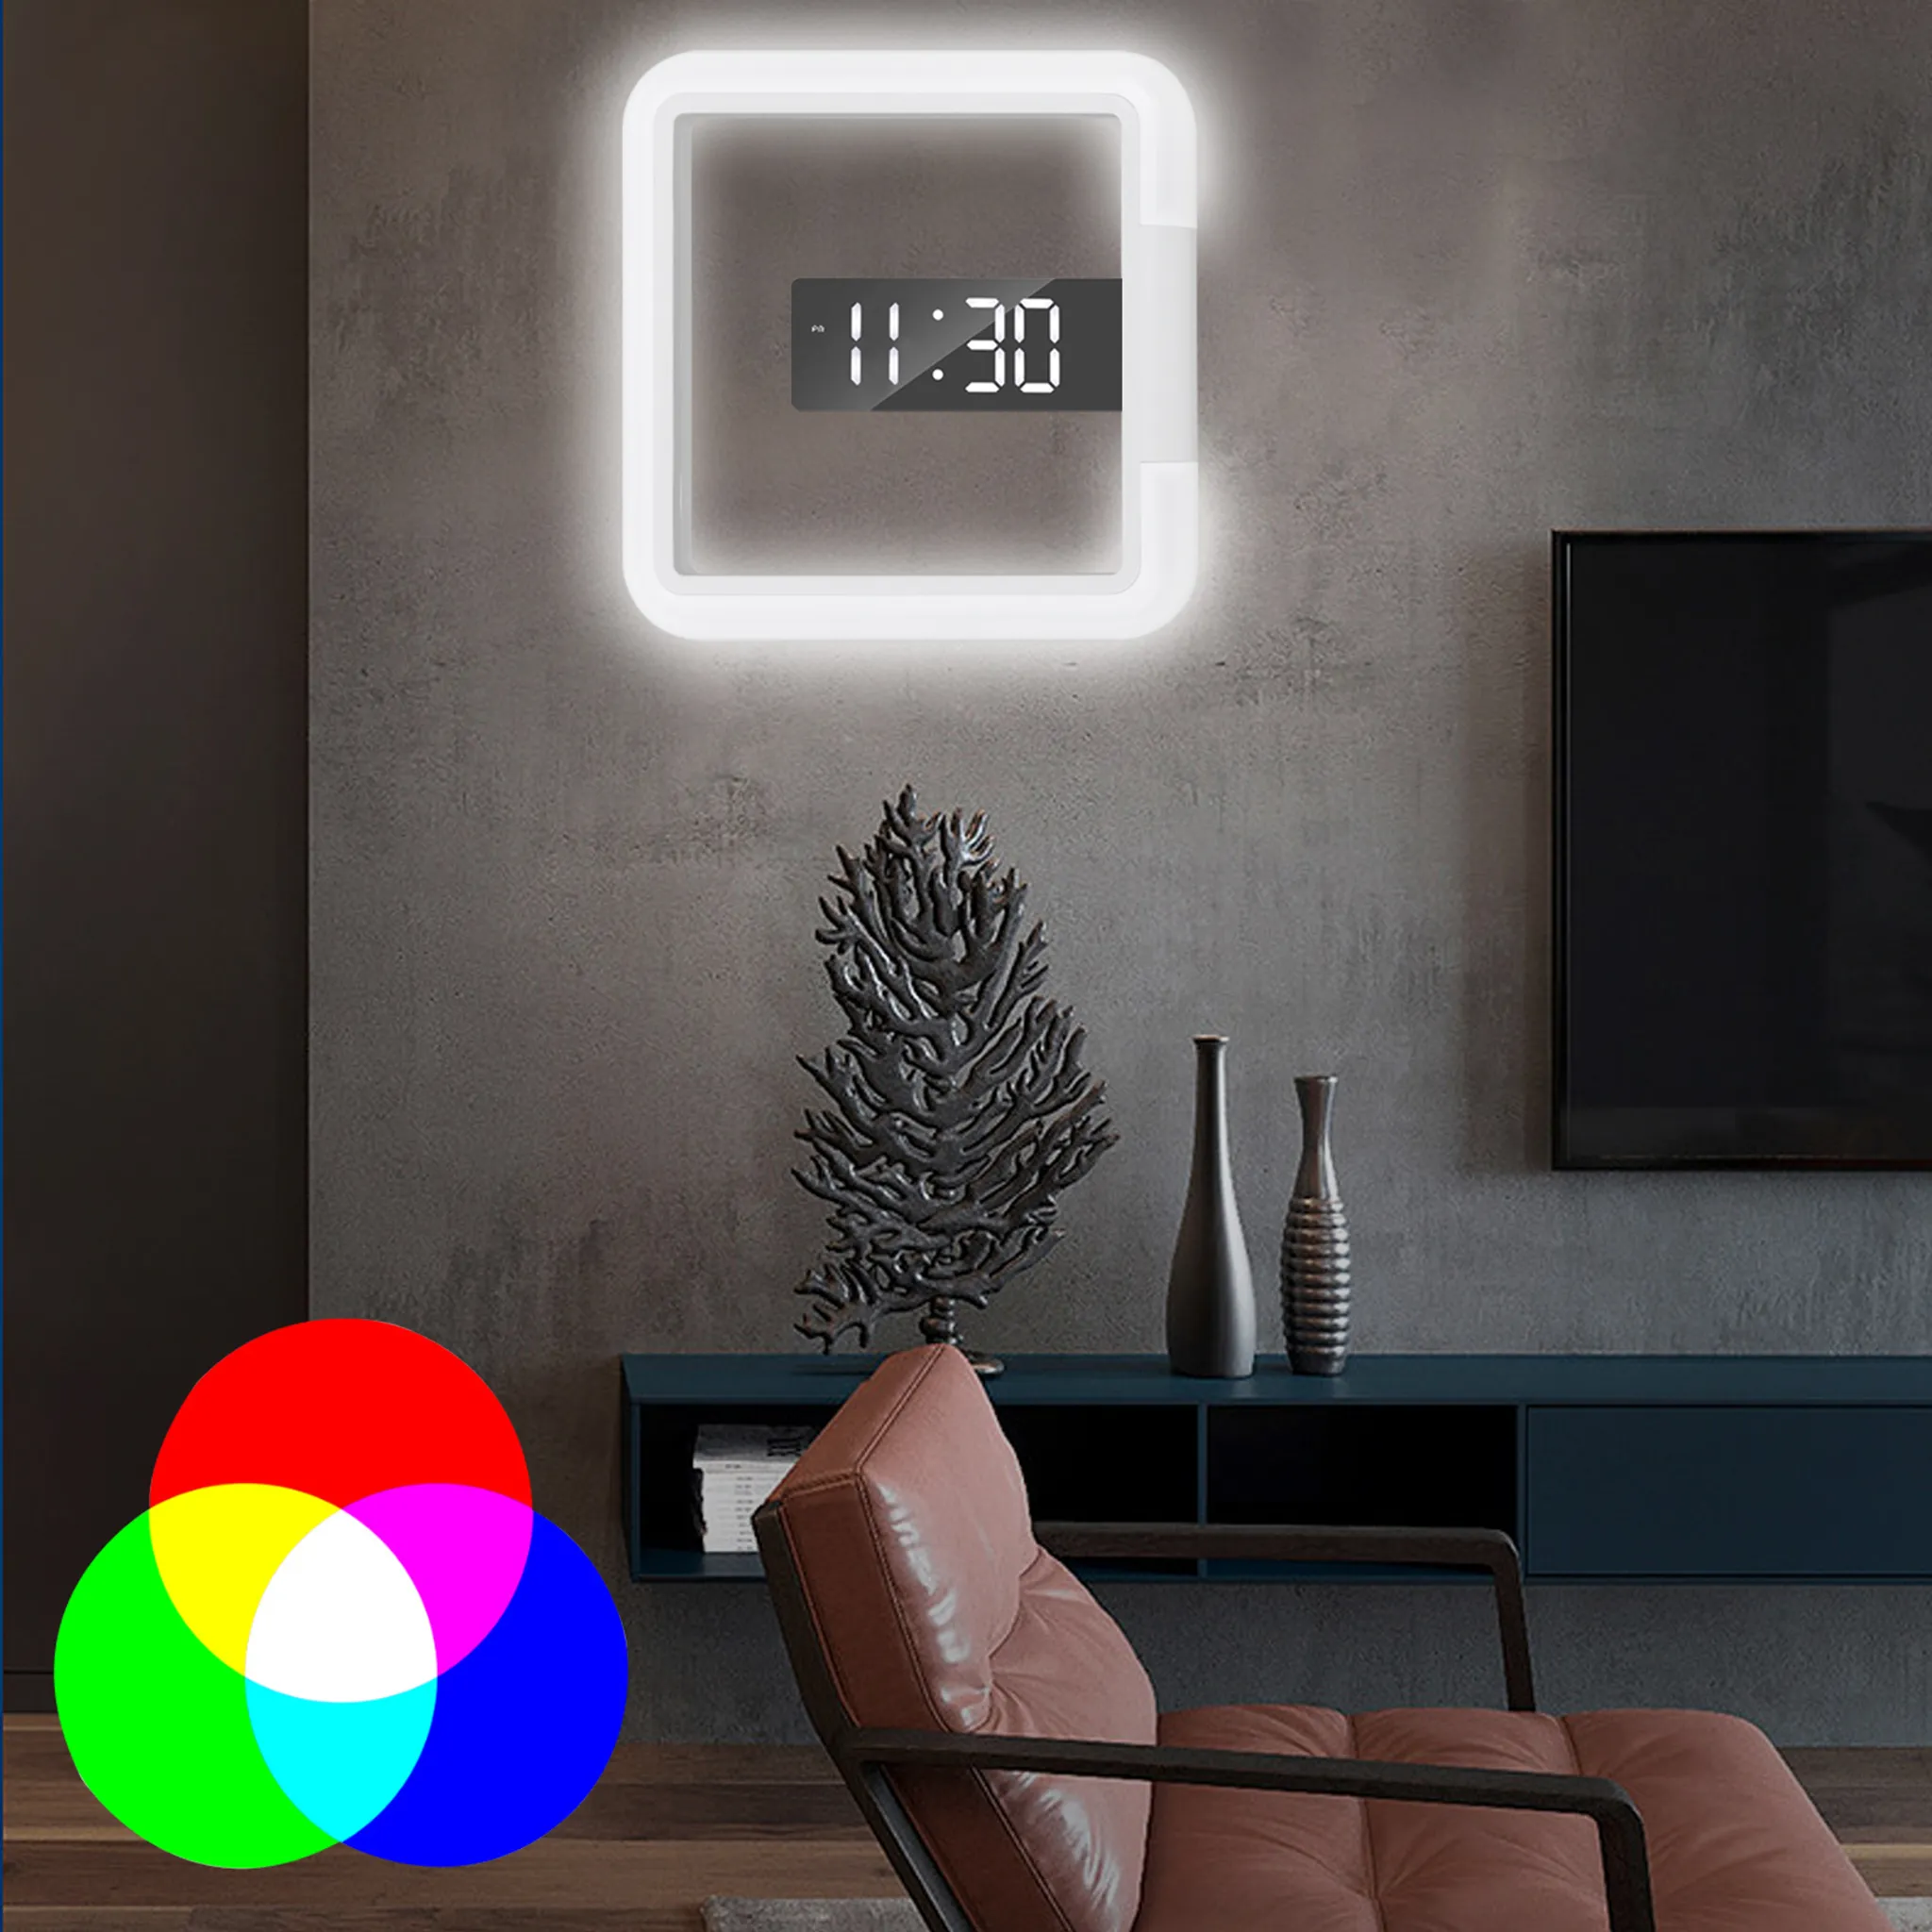 LED Digitale Wanduhr 7 Farbe RGB-Licht Wecker